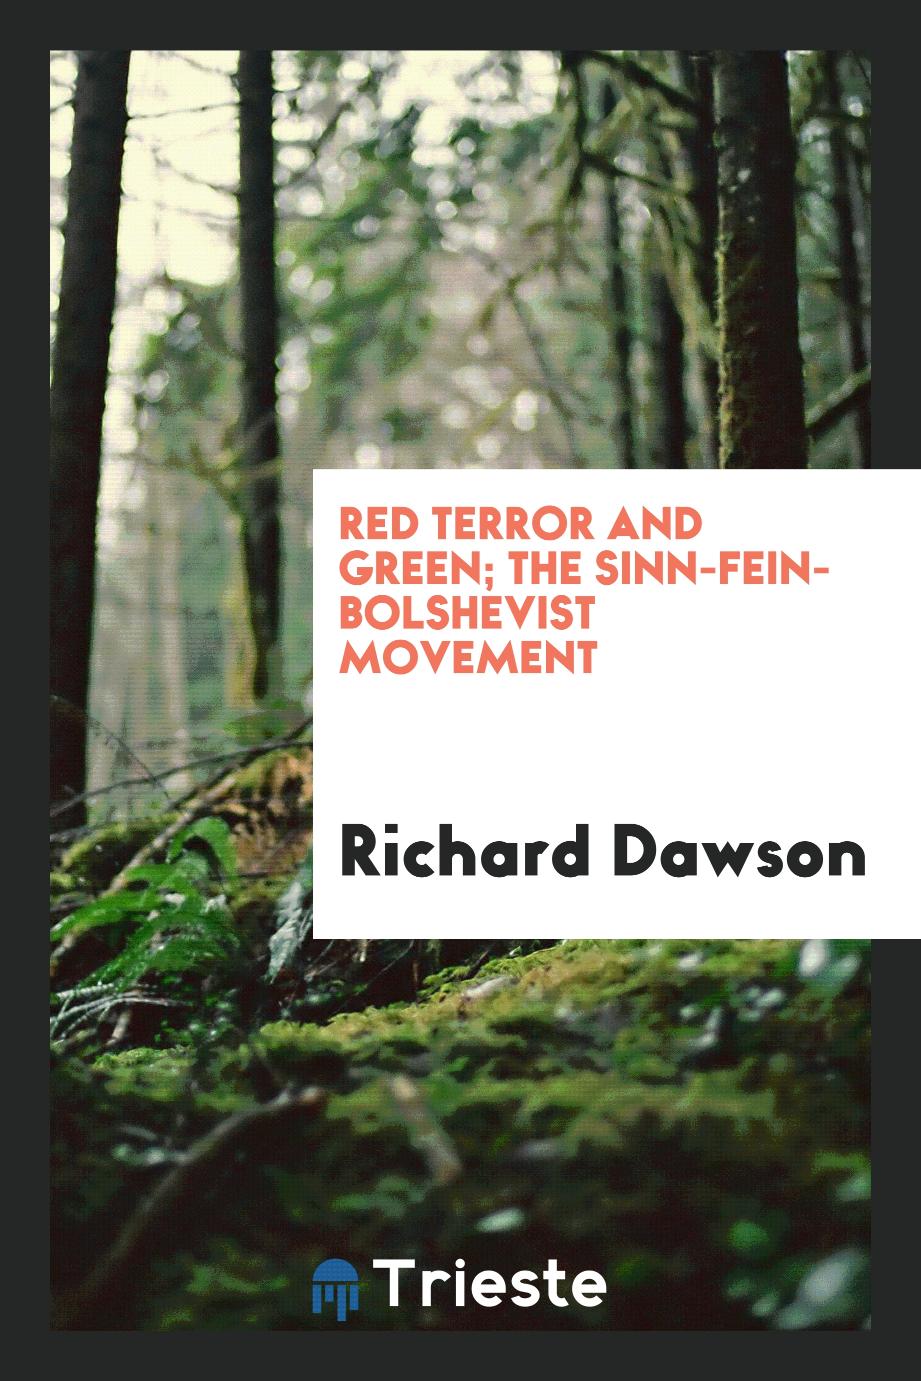 Red terror and green; the Sinn-Fein-bolshevist movement